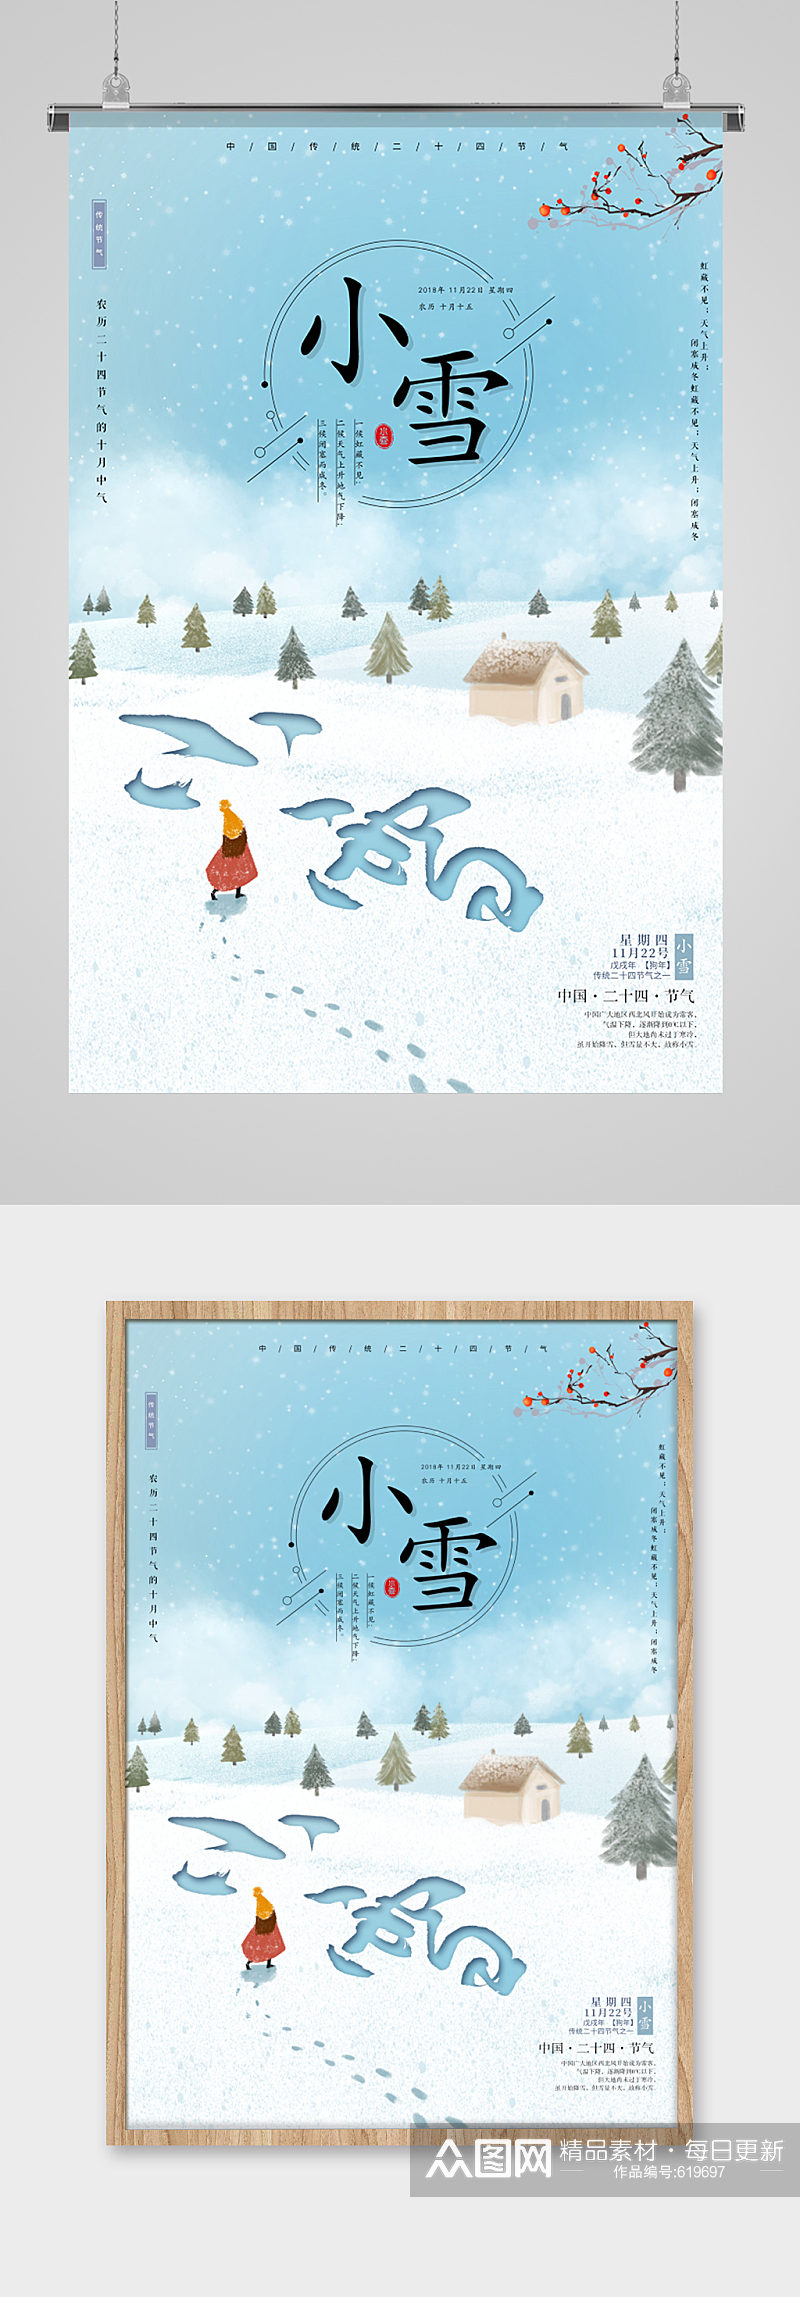 雪地小雪字体创意海报素材